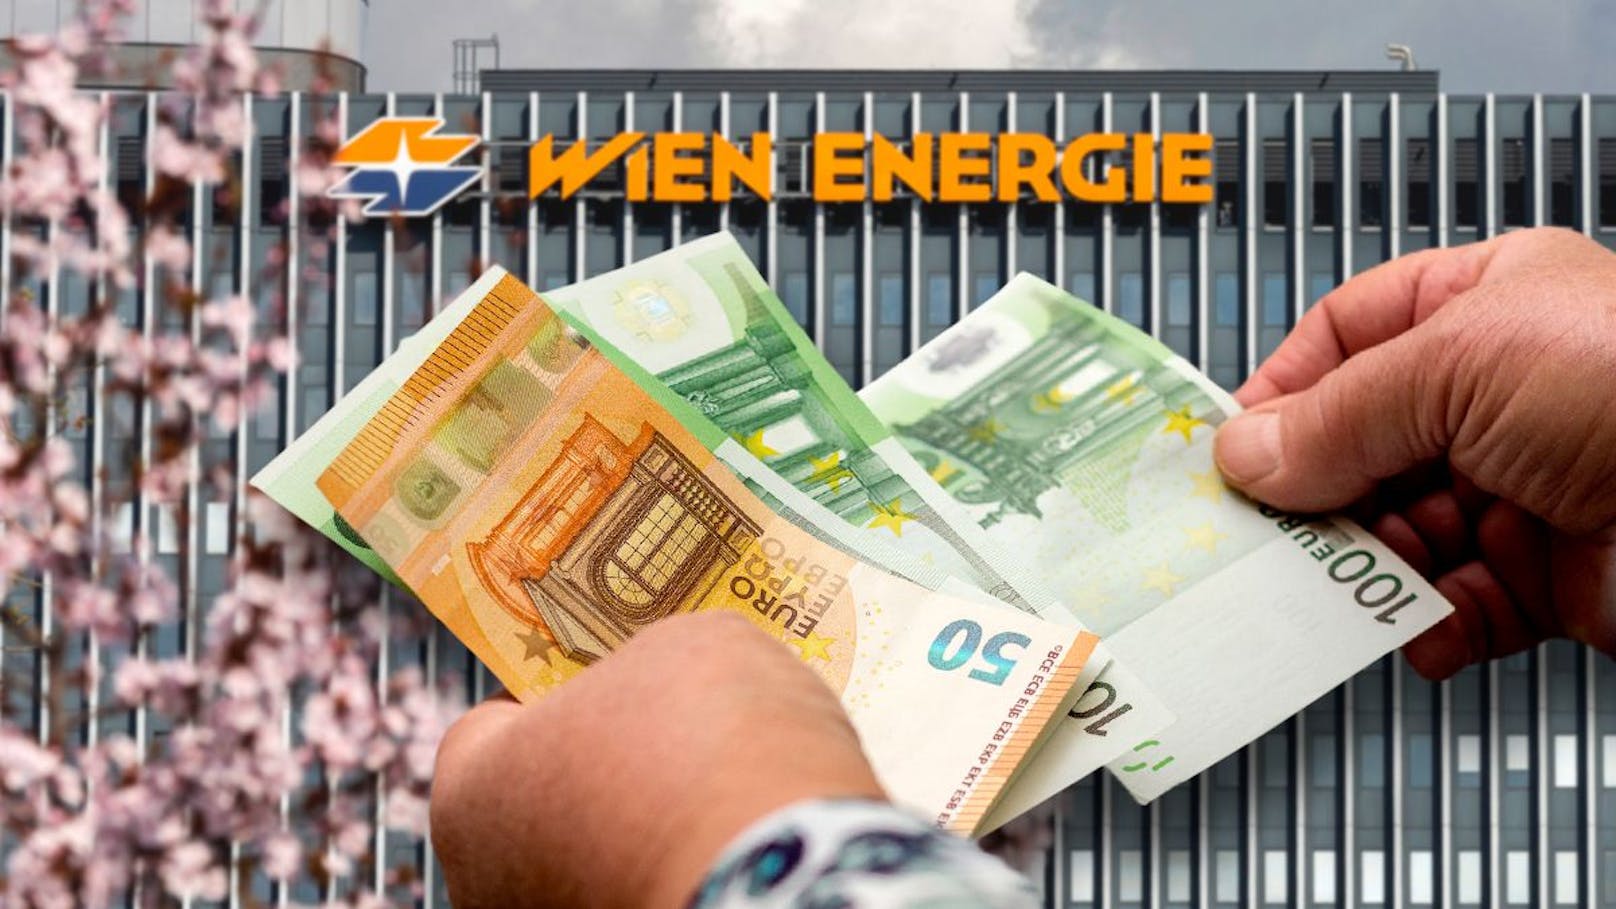 Wien Energie - Figure 2